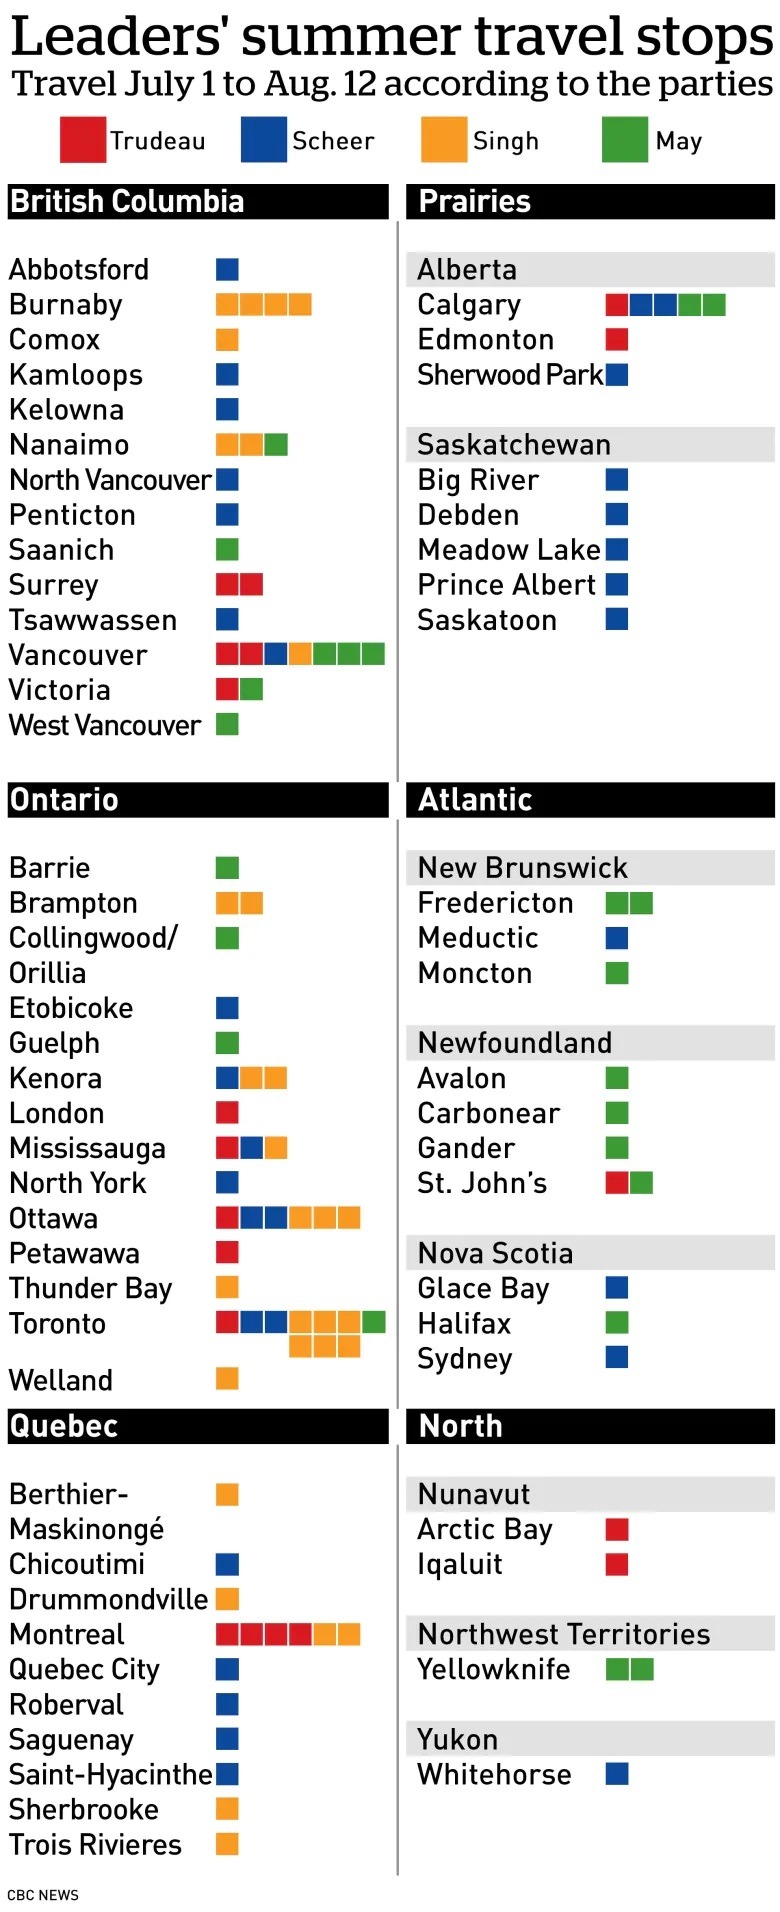 نگاهی به سفرهای تابستانی امسال رهبران سیاسی و اهمیت آنها + جدول سفرها احزاب مختلف در سطح کانادا